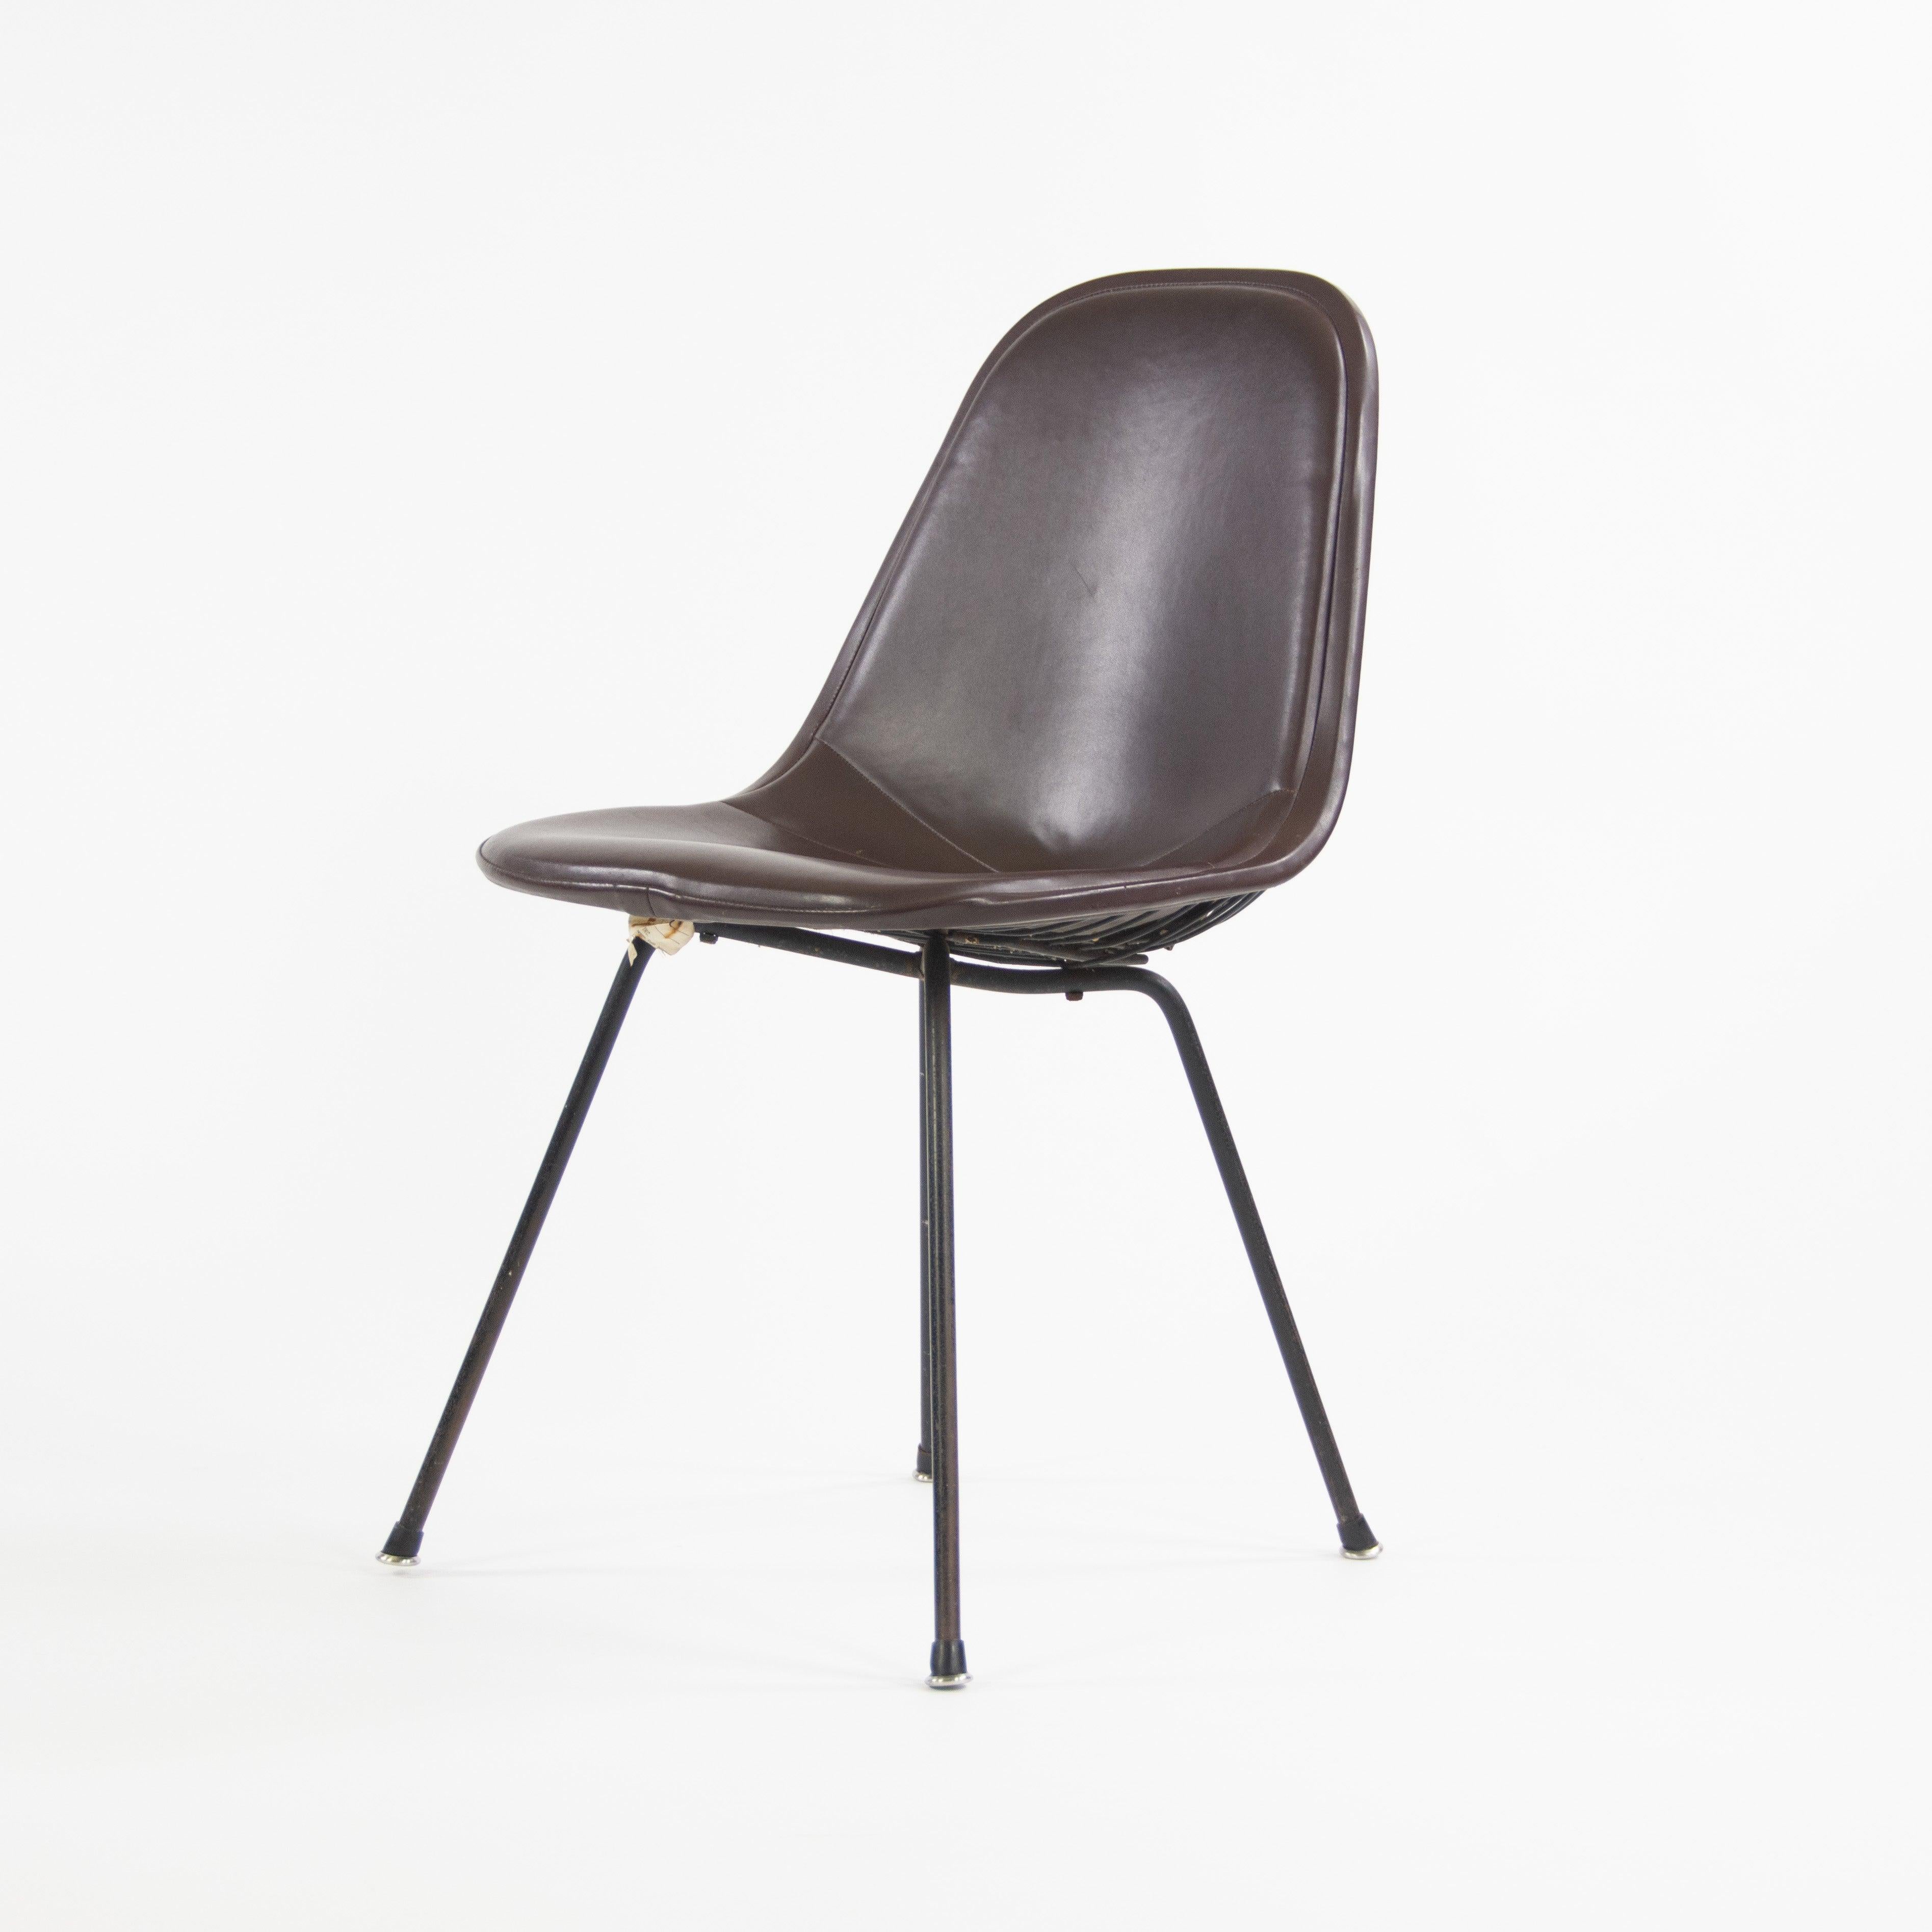 Nous proposons à la vente une chaise Eames 1954 DKX pour Herman Miller, très rare et originale, avec un plateau en fil de fer, un pad rembourré et une base en X de la première heure.

Cette pièce peut être datée grâce à l'utilisation de cette